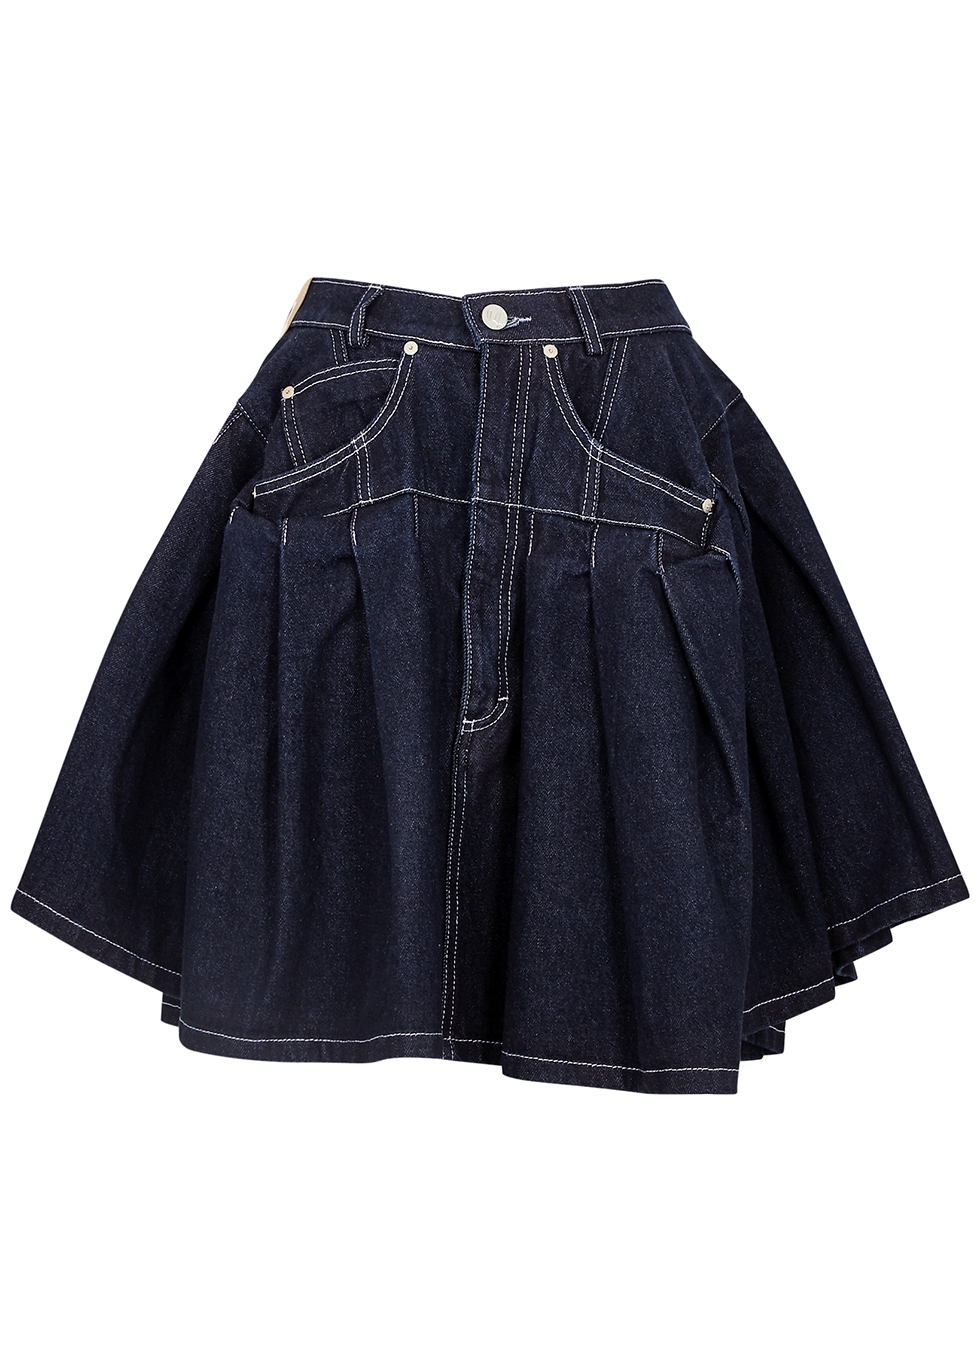 Natasha Zinko Indigo Denim Mini Skirt | ModeSens